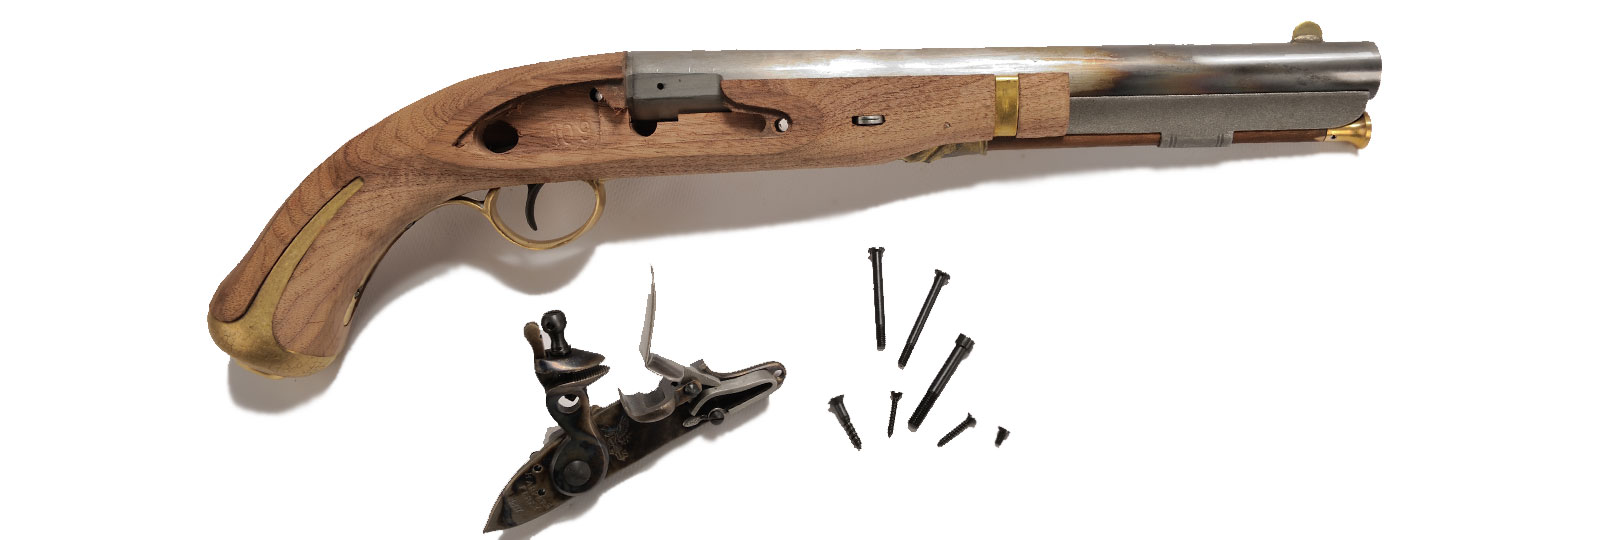 Harper's Ferry pistol kit